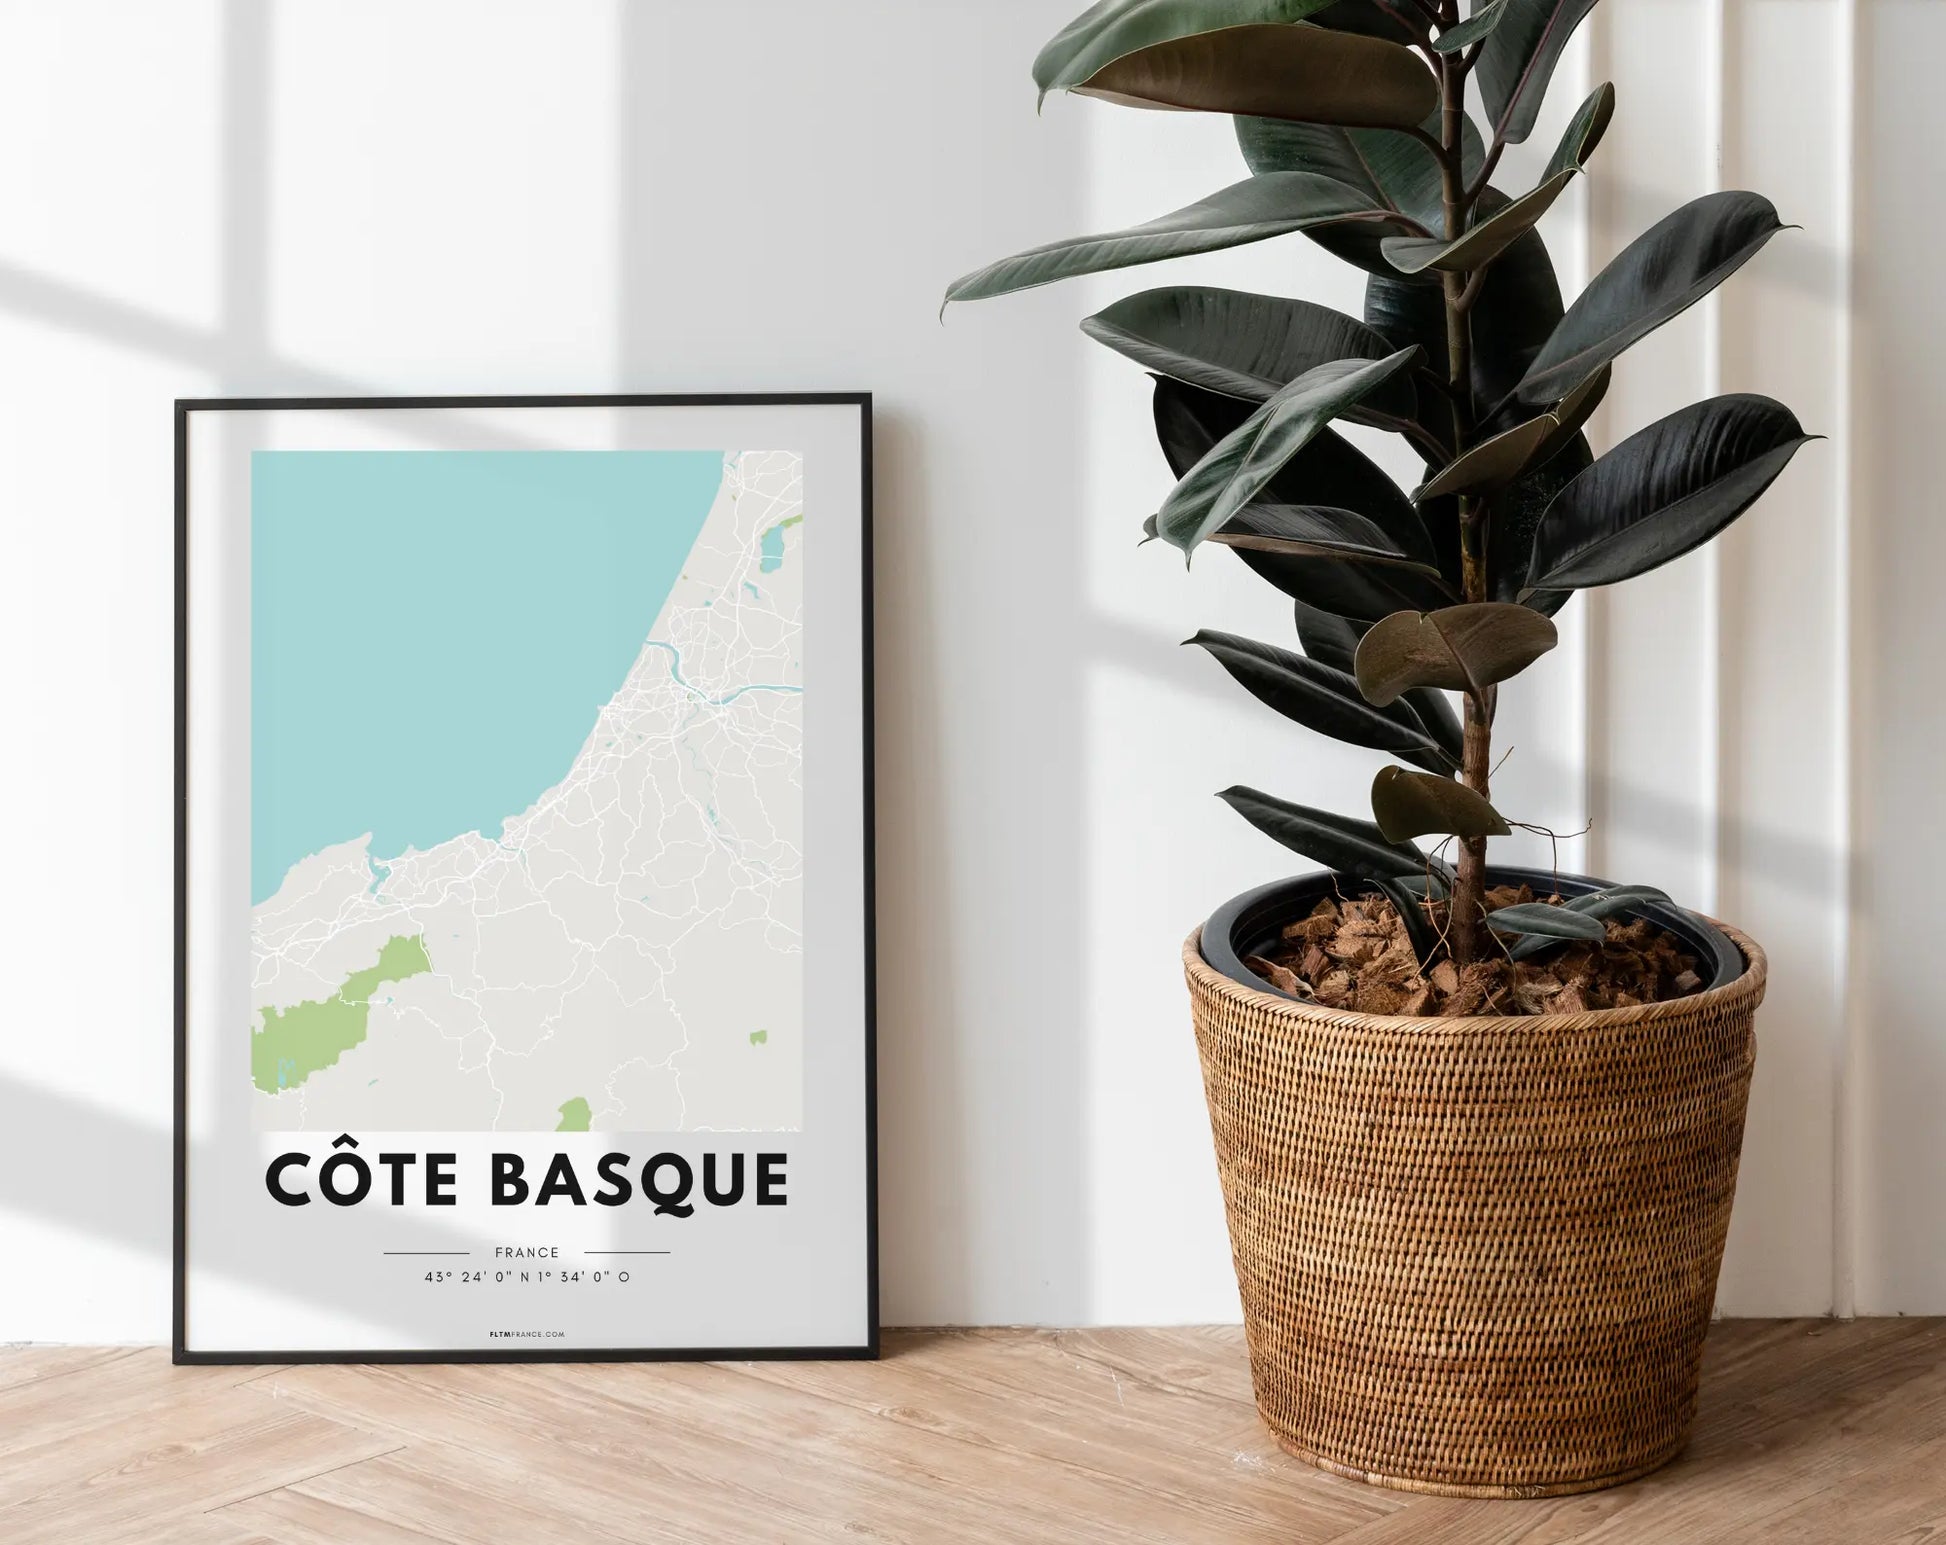 Affiche carte Côte Basque - Villes de France FLTMfrance